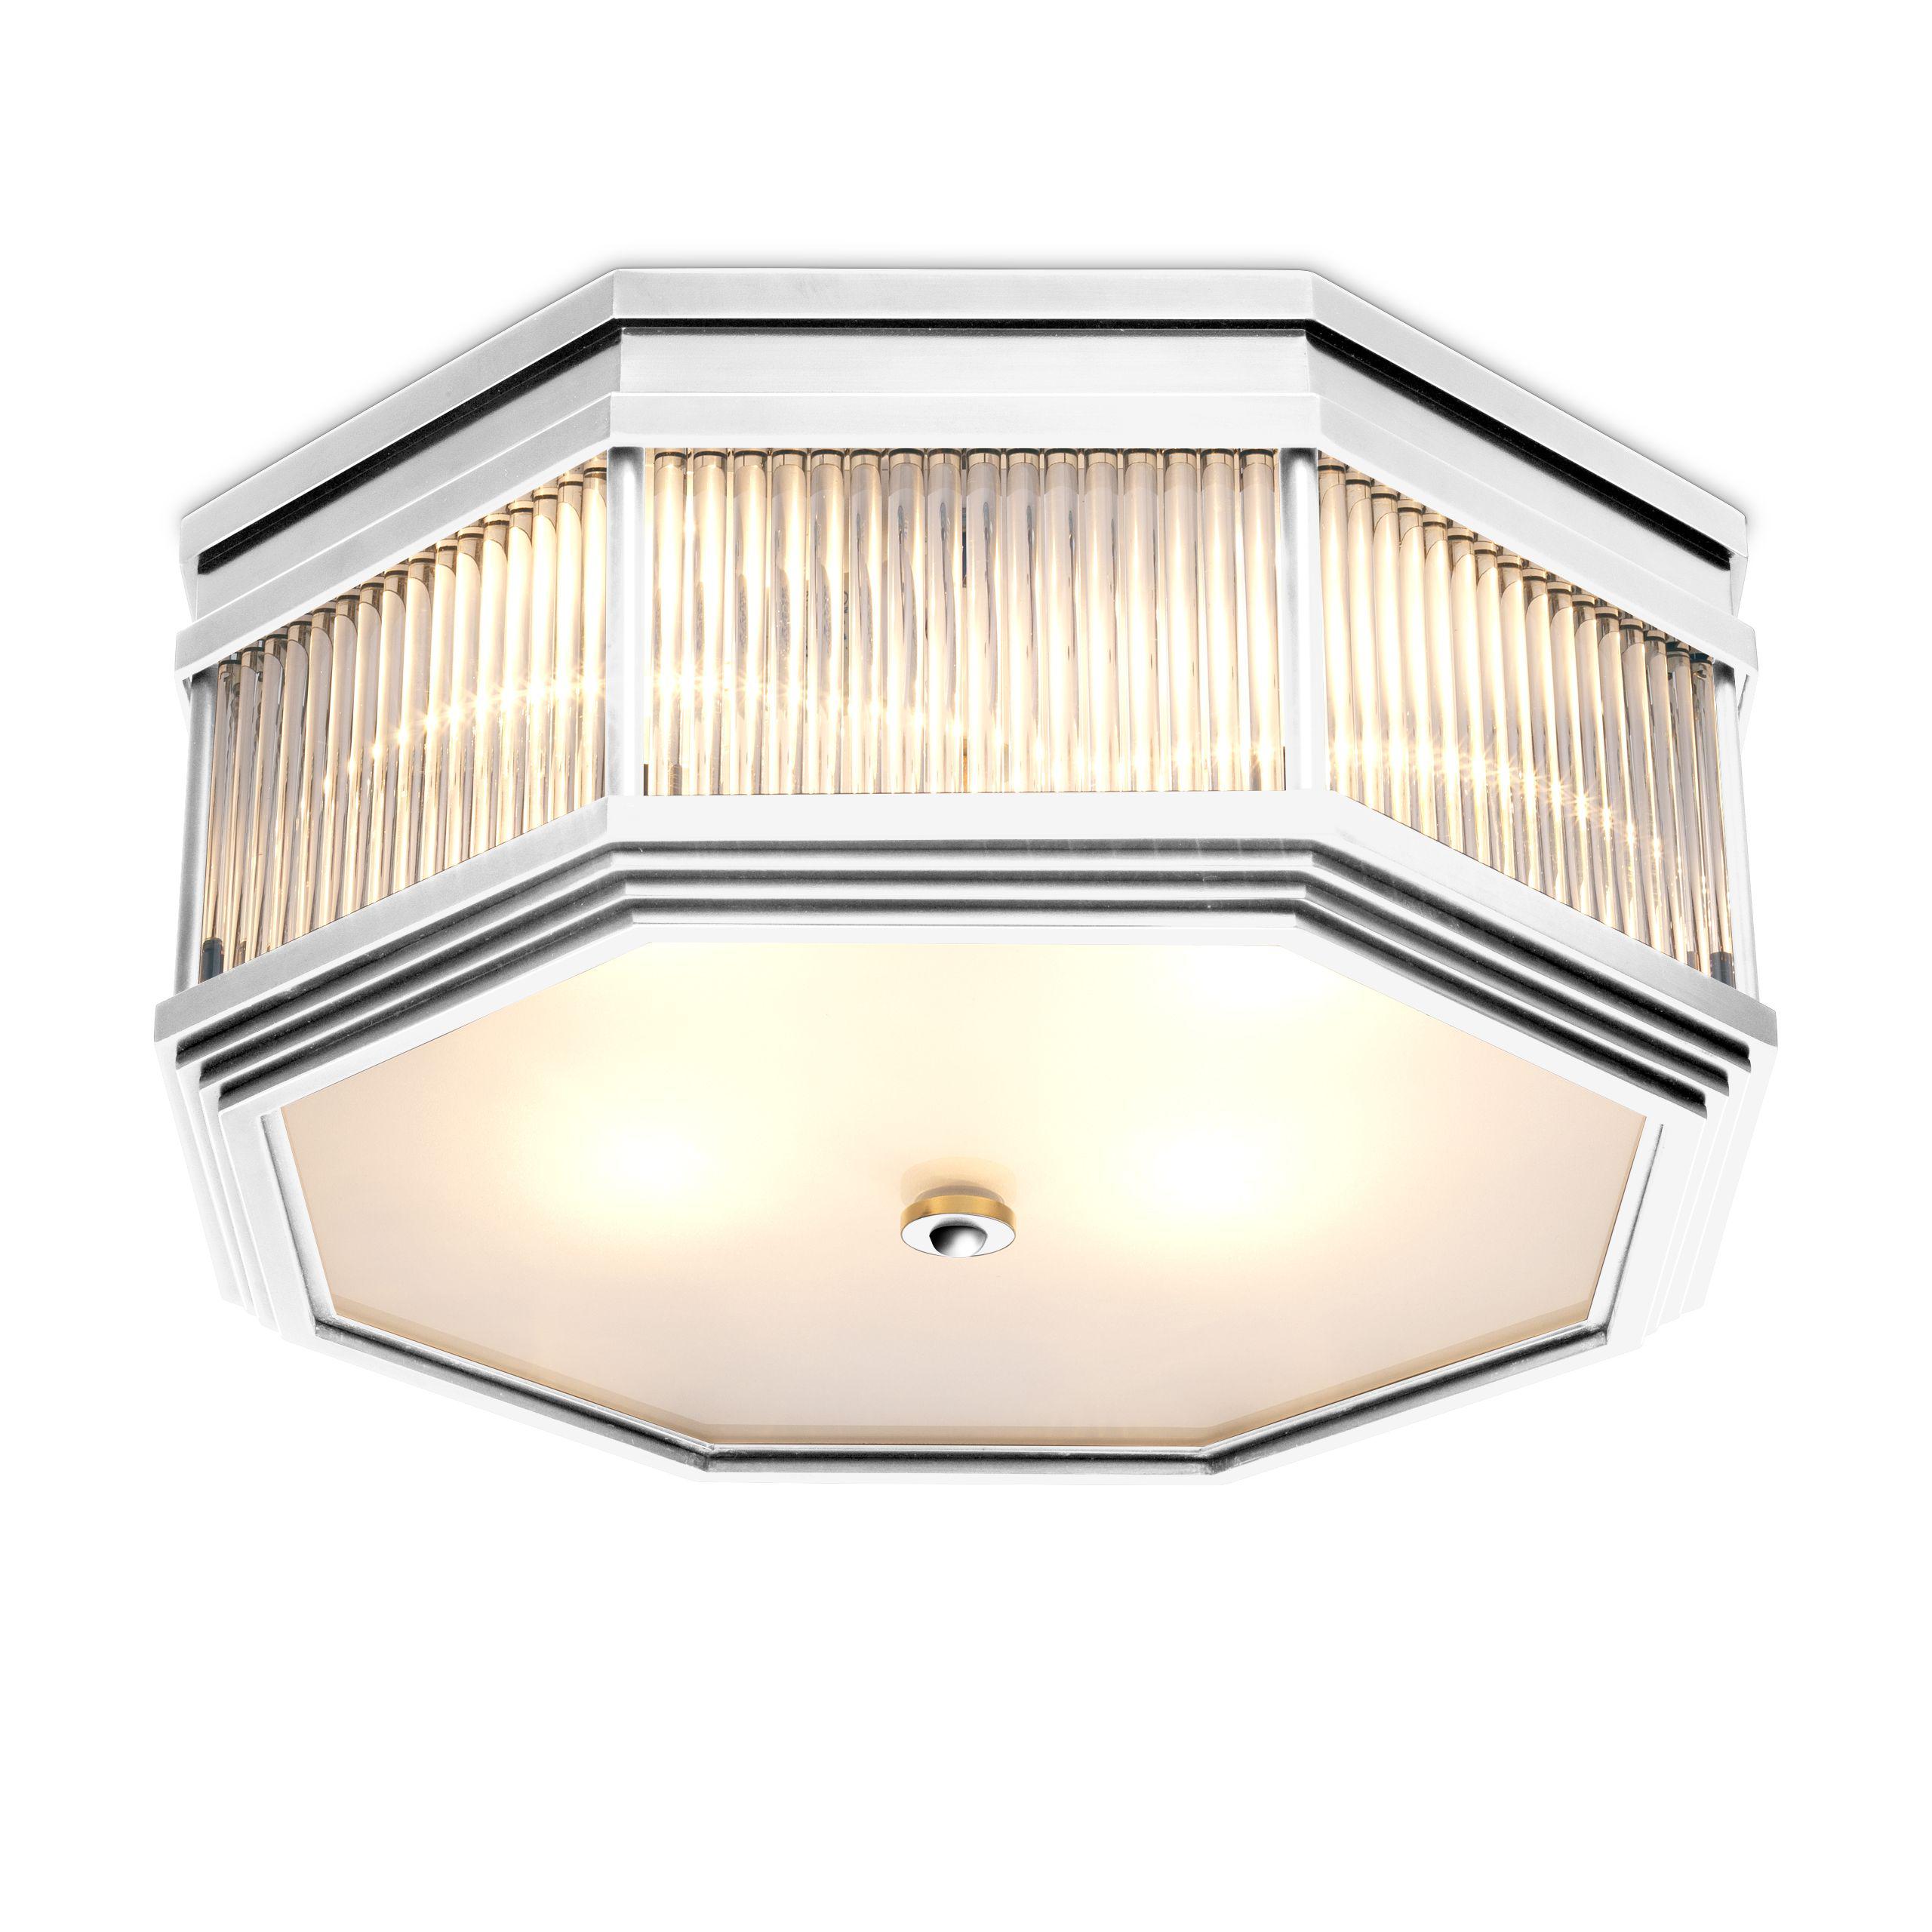 Купить Накладной светильник Ceiling Lamp Bagatelle в интернет-магазине roooms.ru